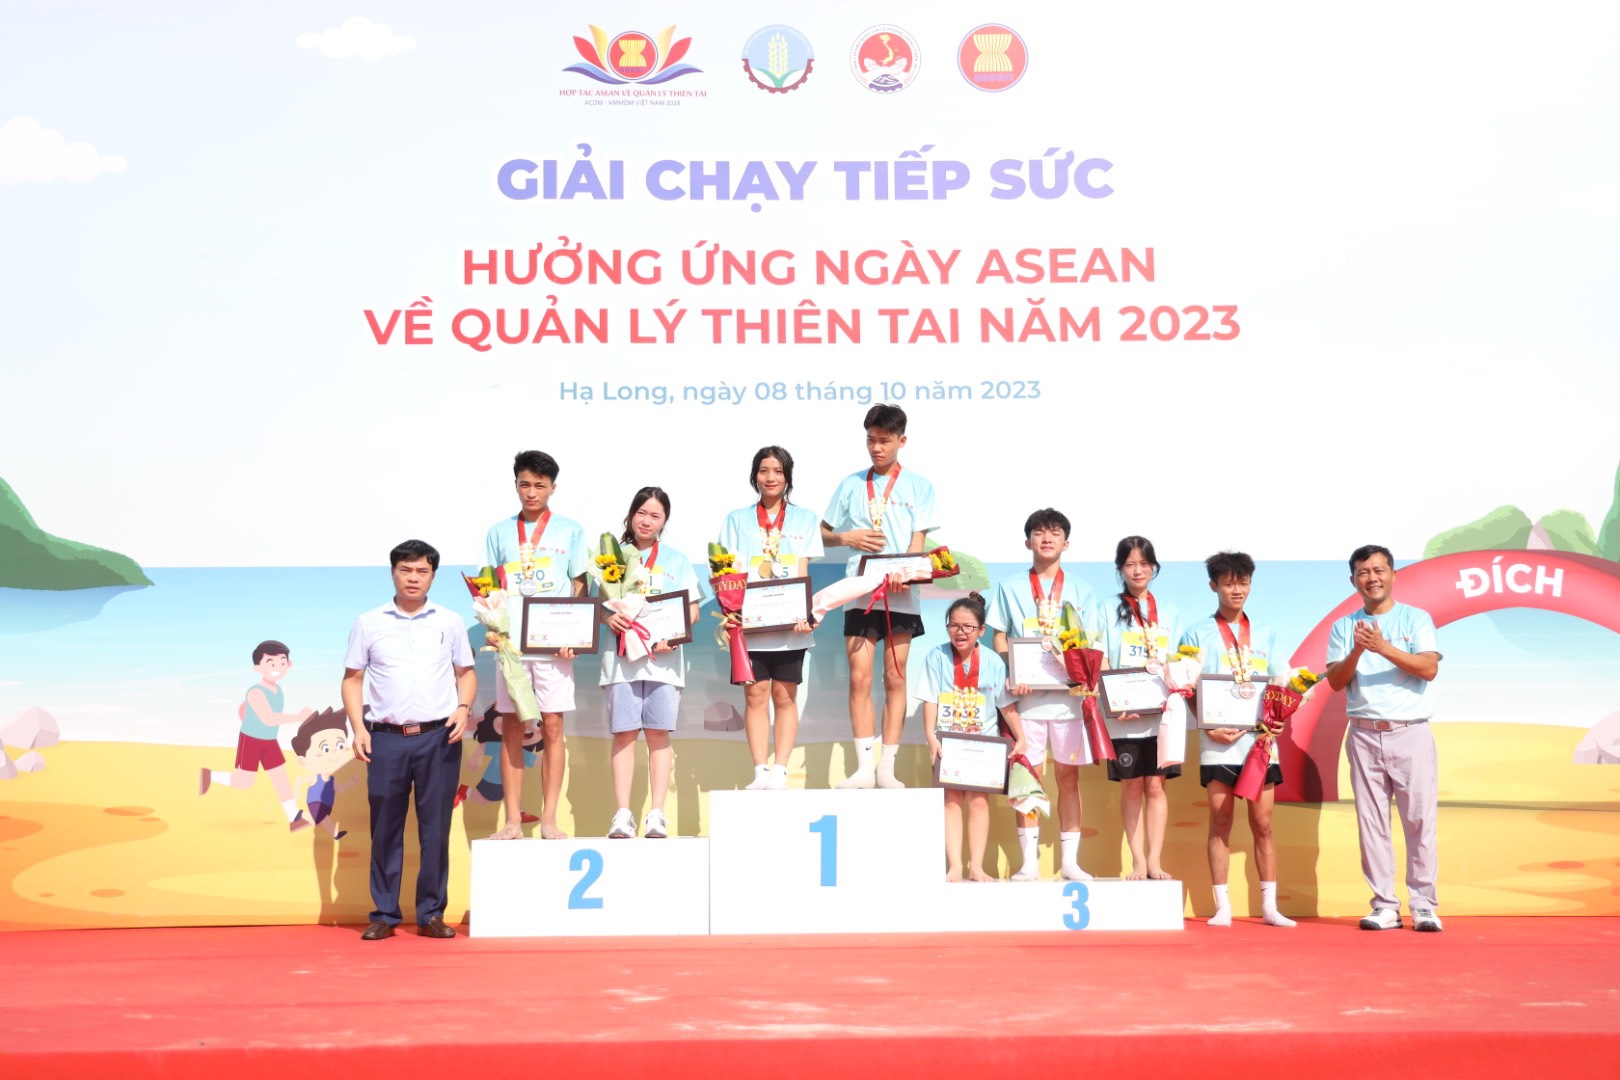 Hơn 1.000 người chạy tiếp sức hưởng ứng Ngày ASEAN về Quản lý thiên tai năm 2023 - Ảnh 2.